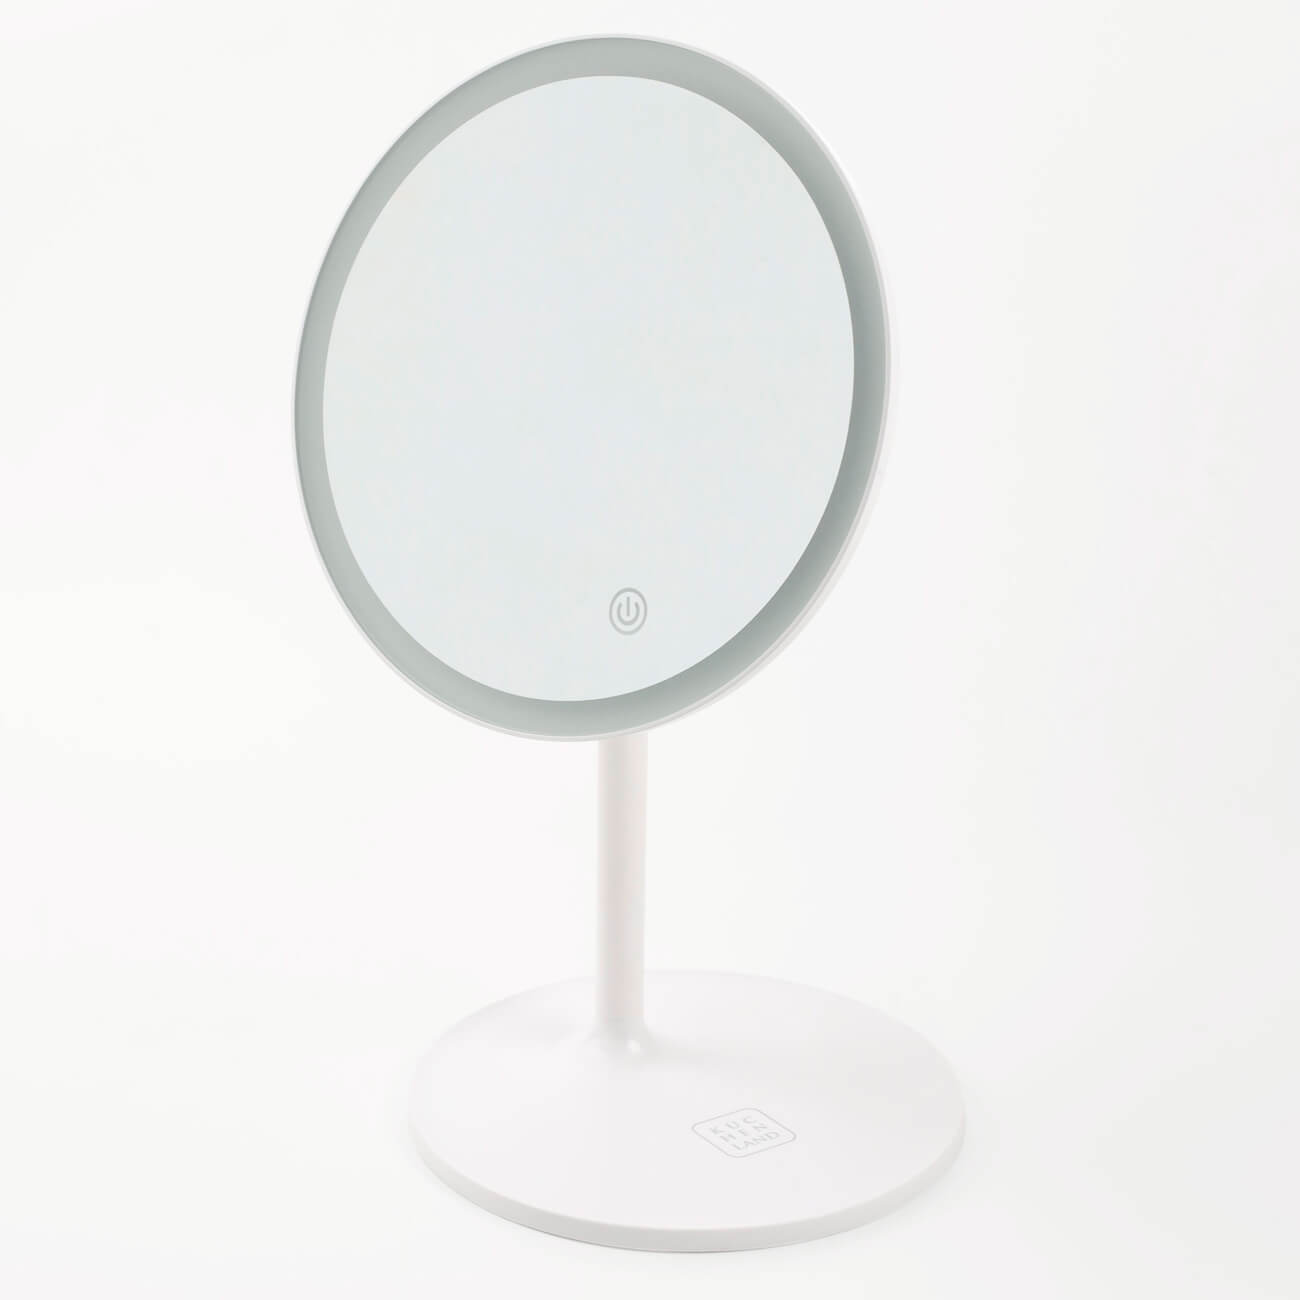 Зеркало настольное, 33 см, с подсветкой, на подставке, пластик, круглое, белое, Vesta изображение № 1